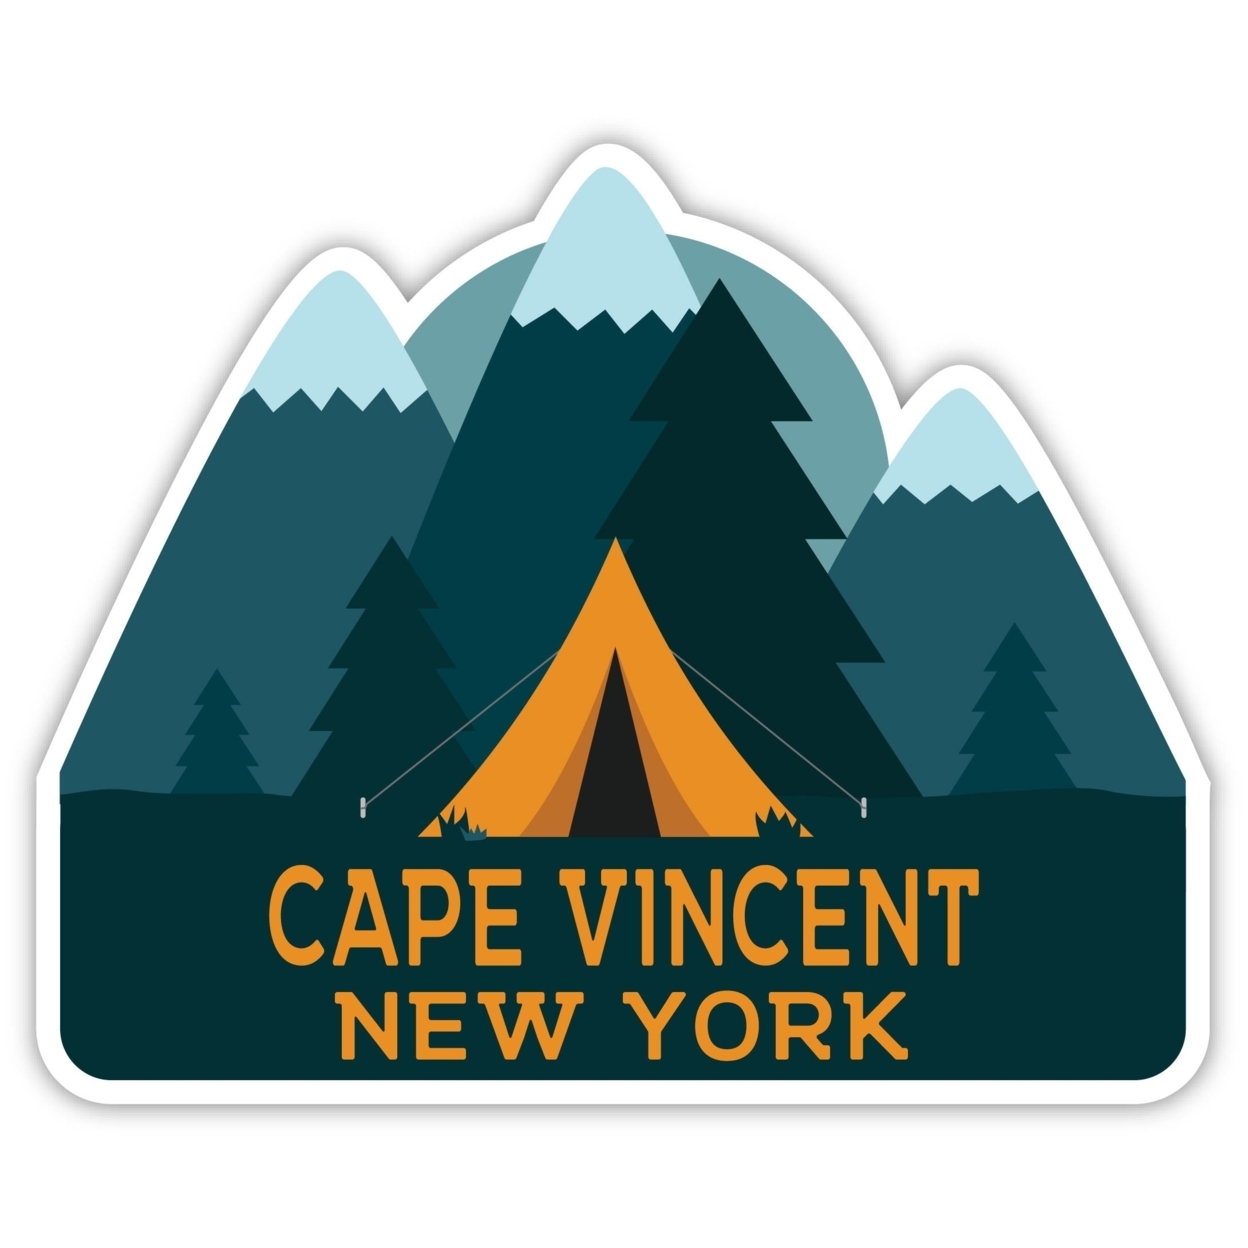 Cape Vincent New York Souvenir Decorative Stickers (Choose Theme And Size) - Single Unit, 6-Inch, Tent